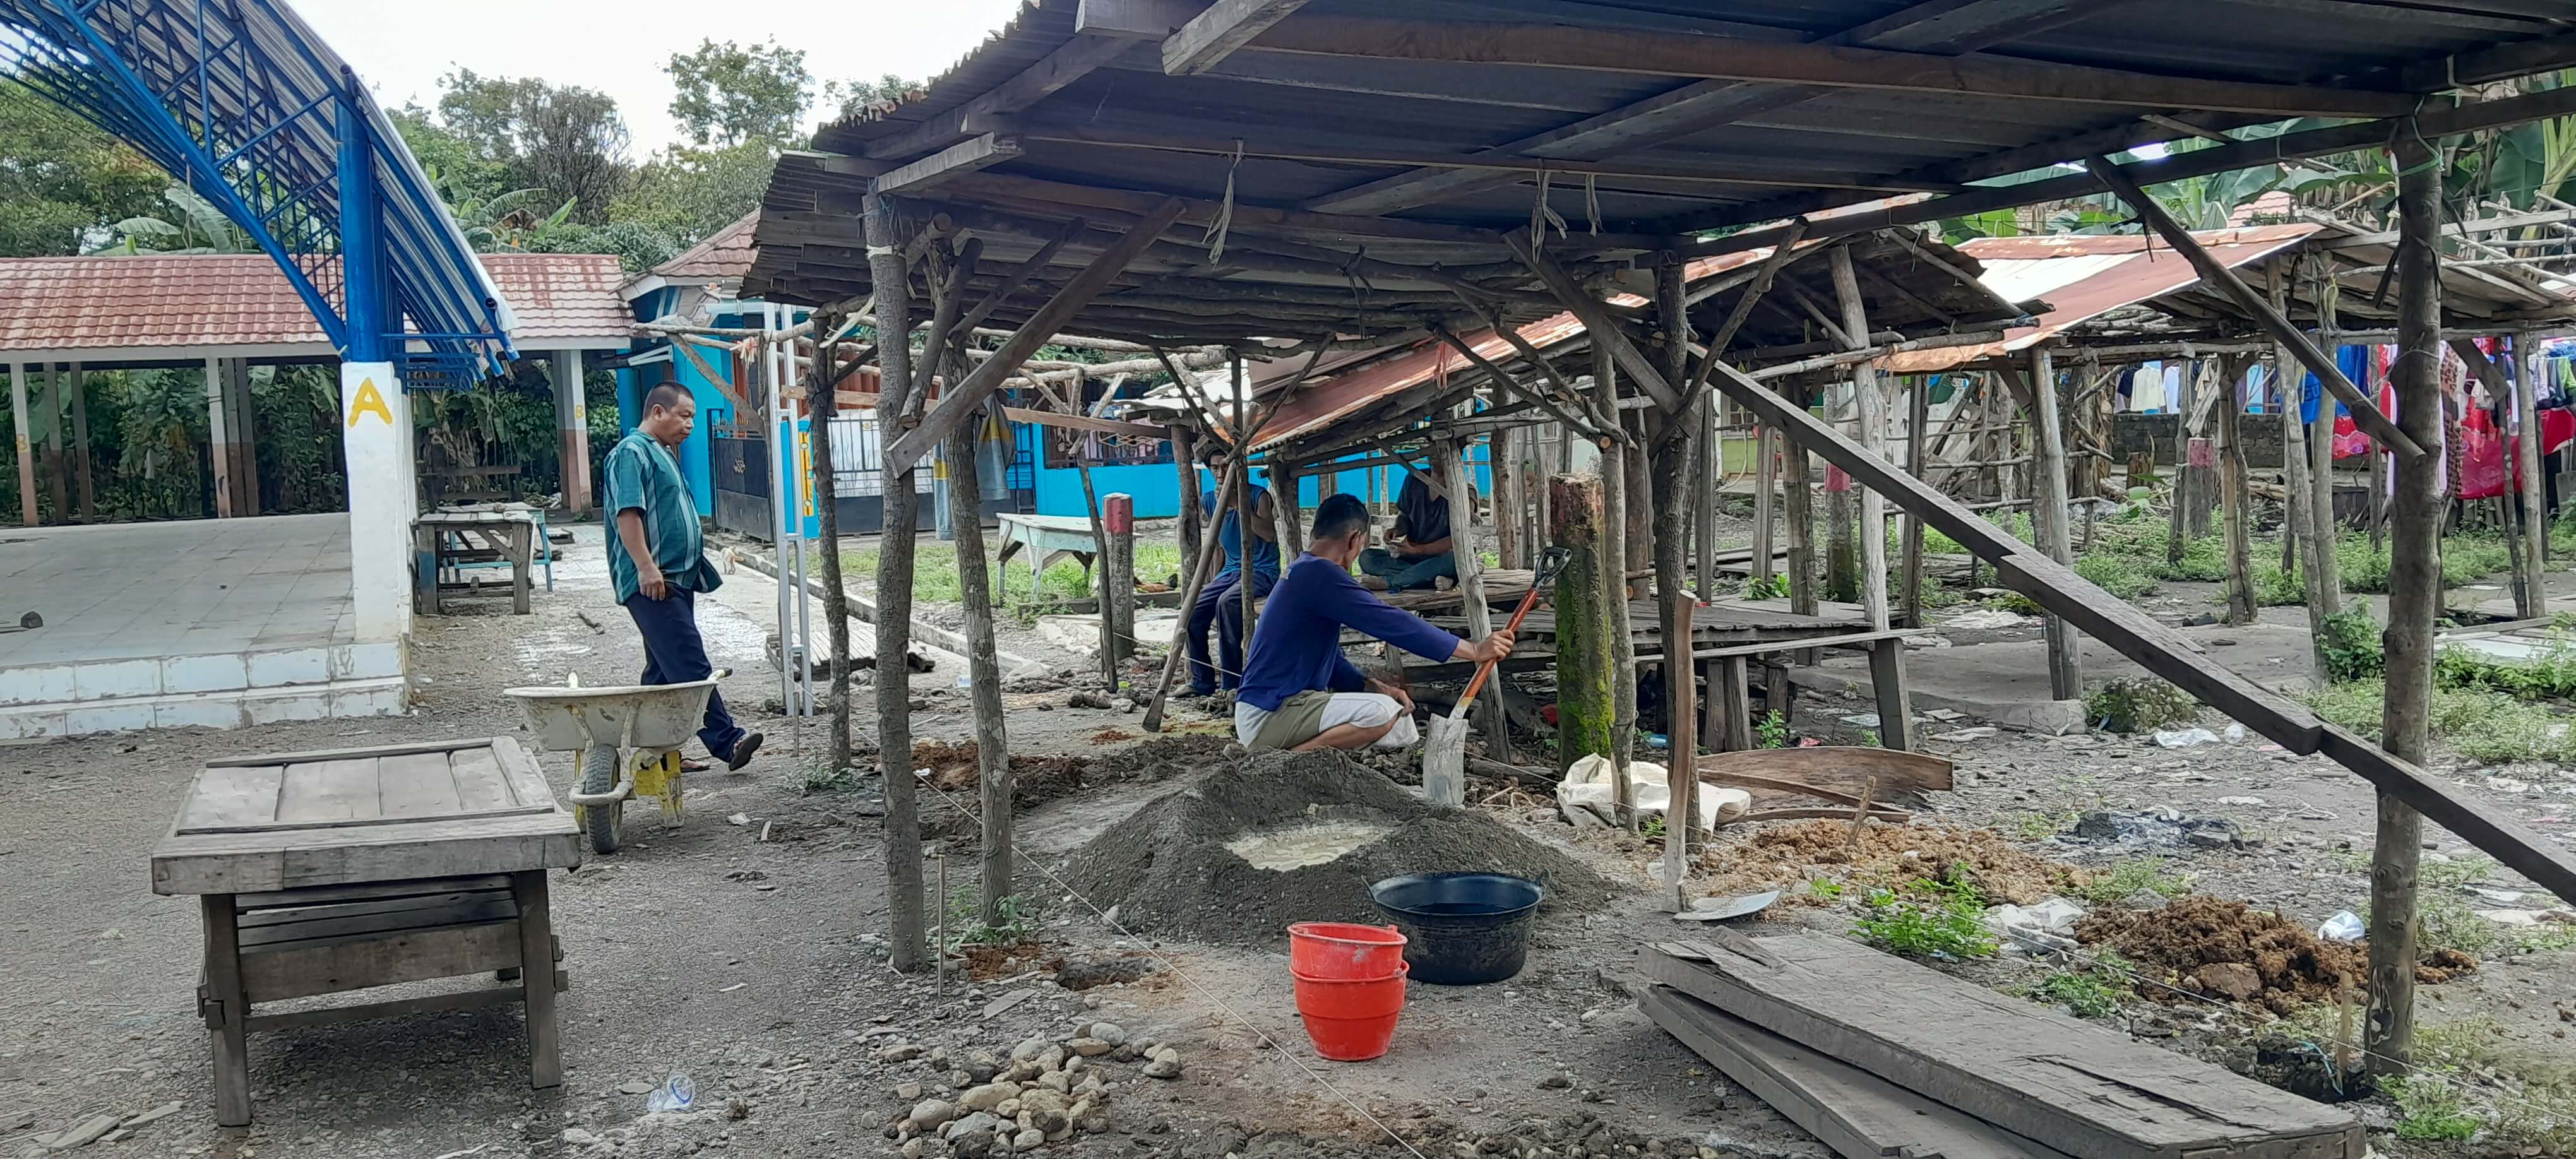 Pembangunan Infrastruktur Desa Gunung Kembang Terus di Kebut, Ini Salah Satunya